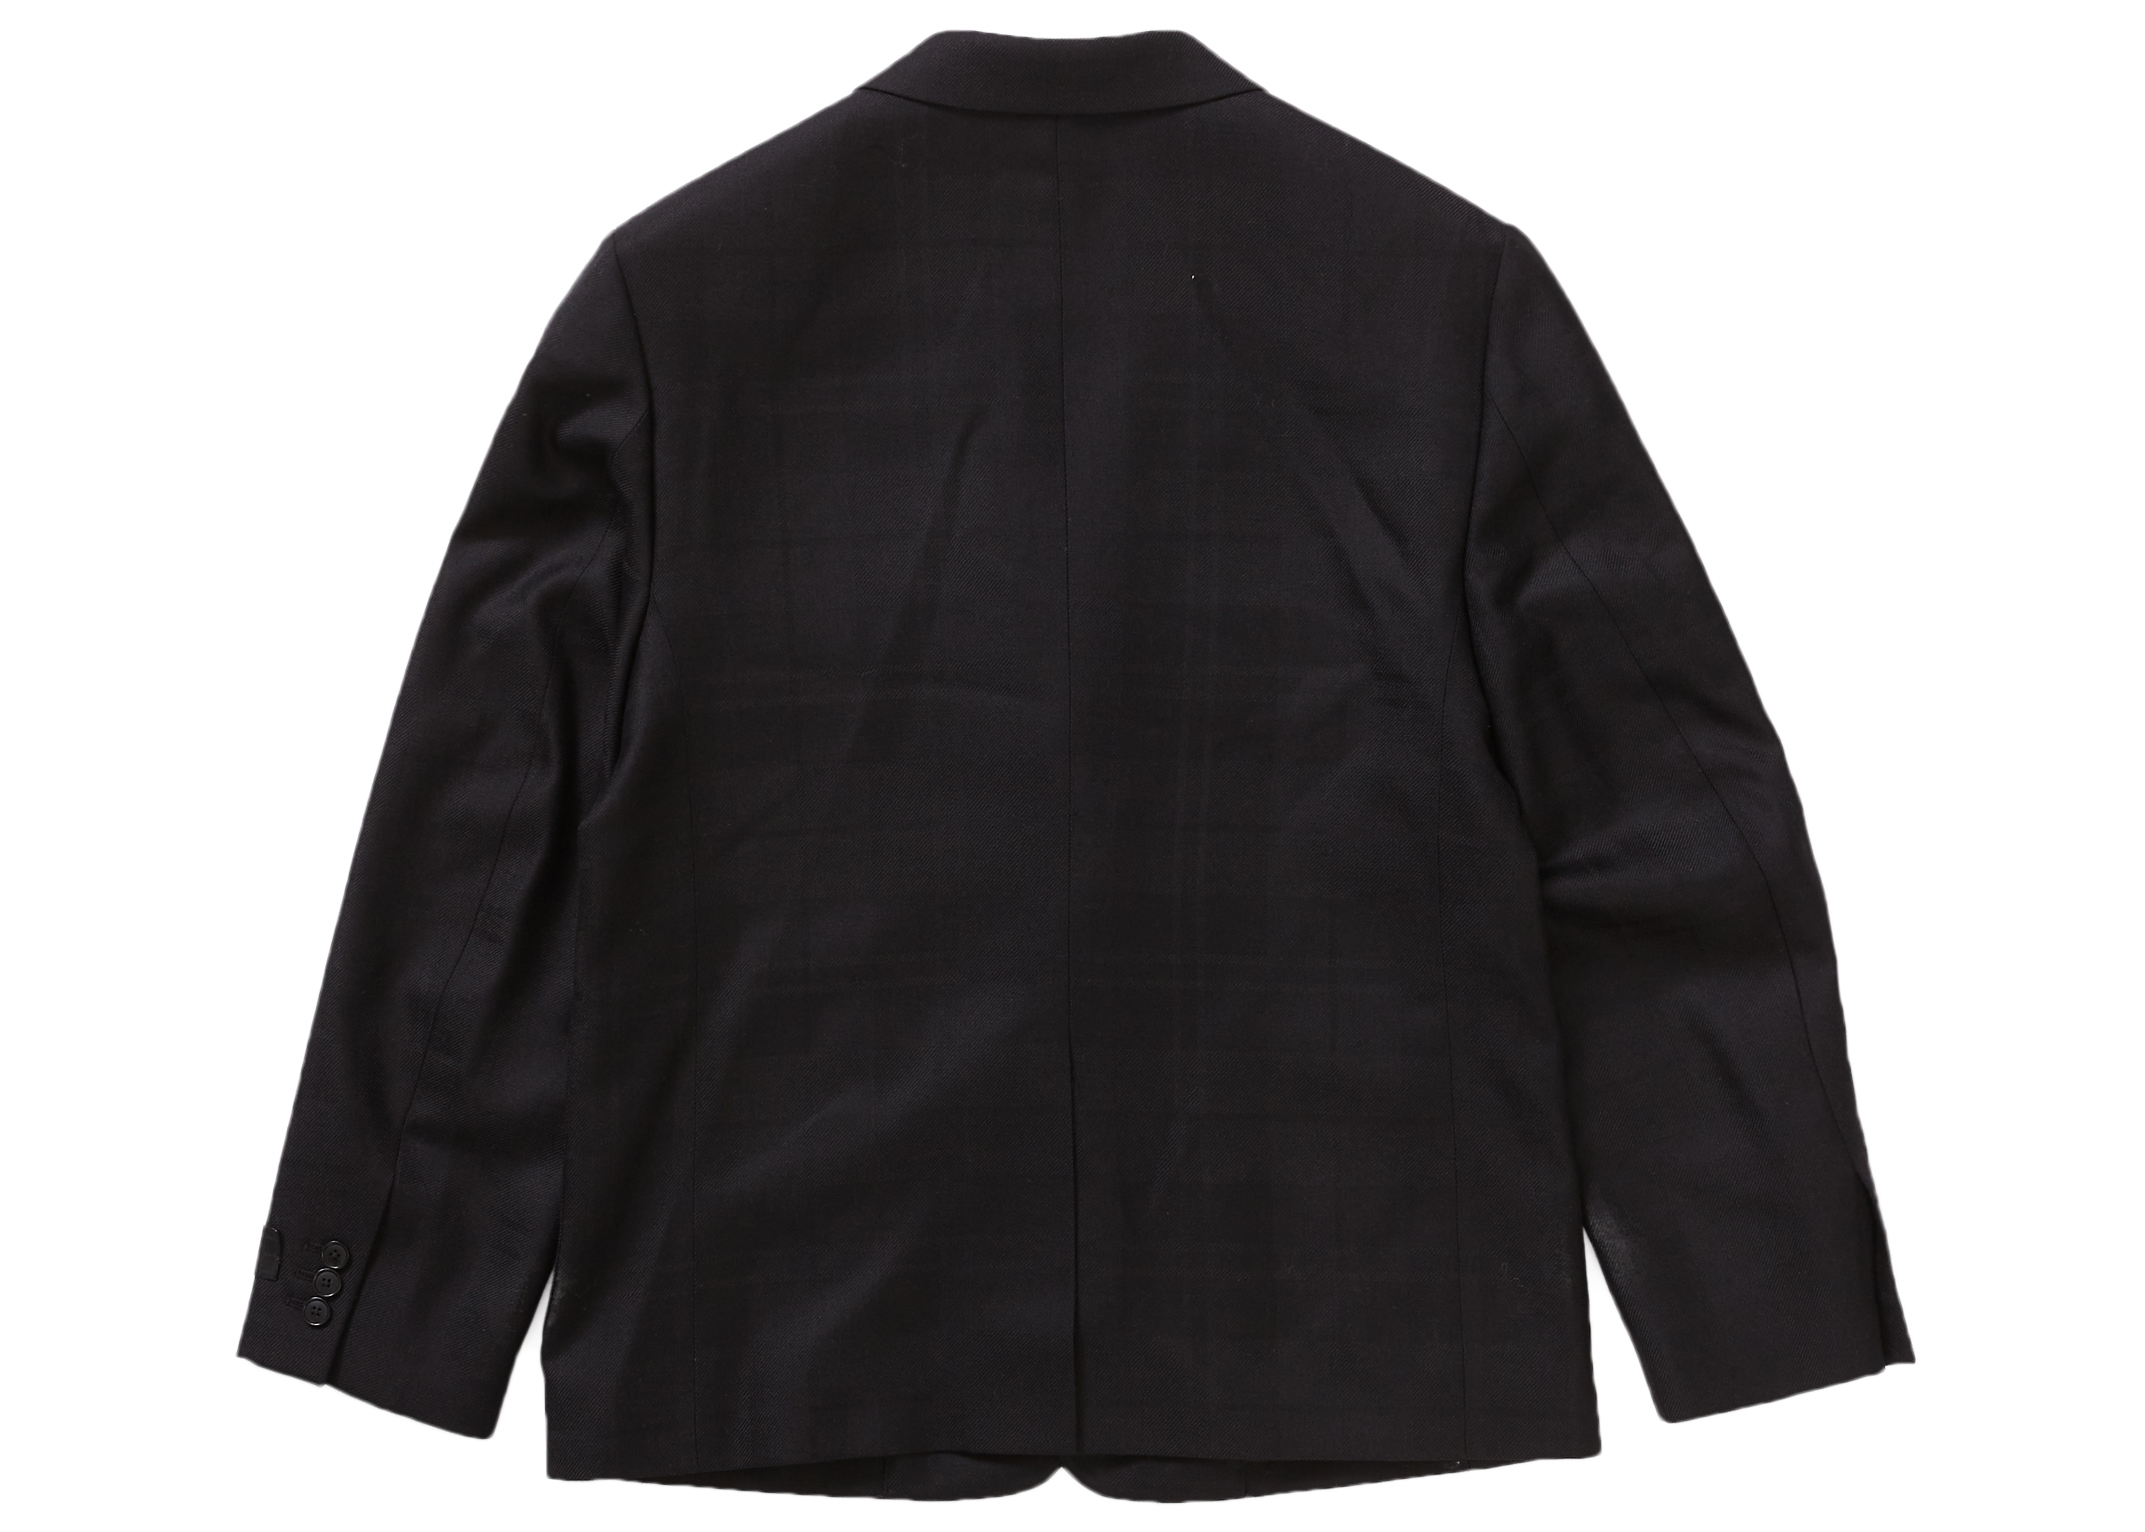 Suit Plaid Supreme 19ss Supreme Tan スーツ Plaid M ライトブラウン/ブラック 19ss Suit Tan  M スーツ